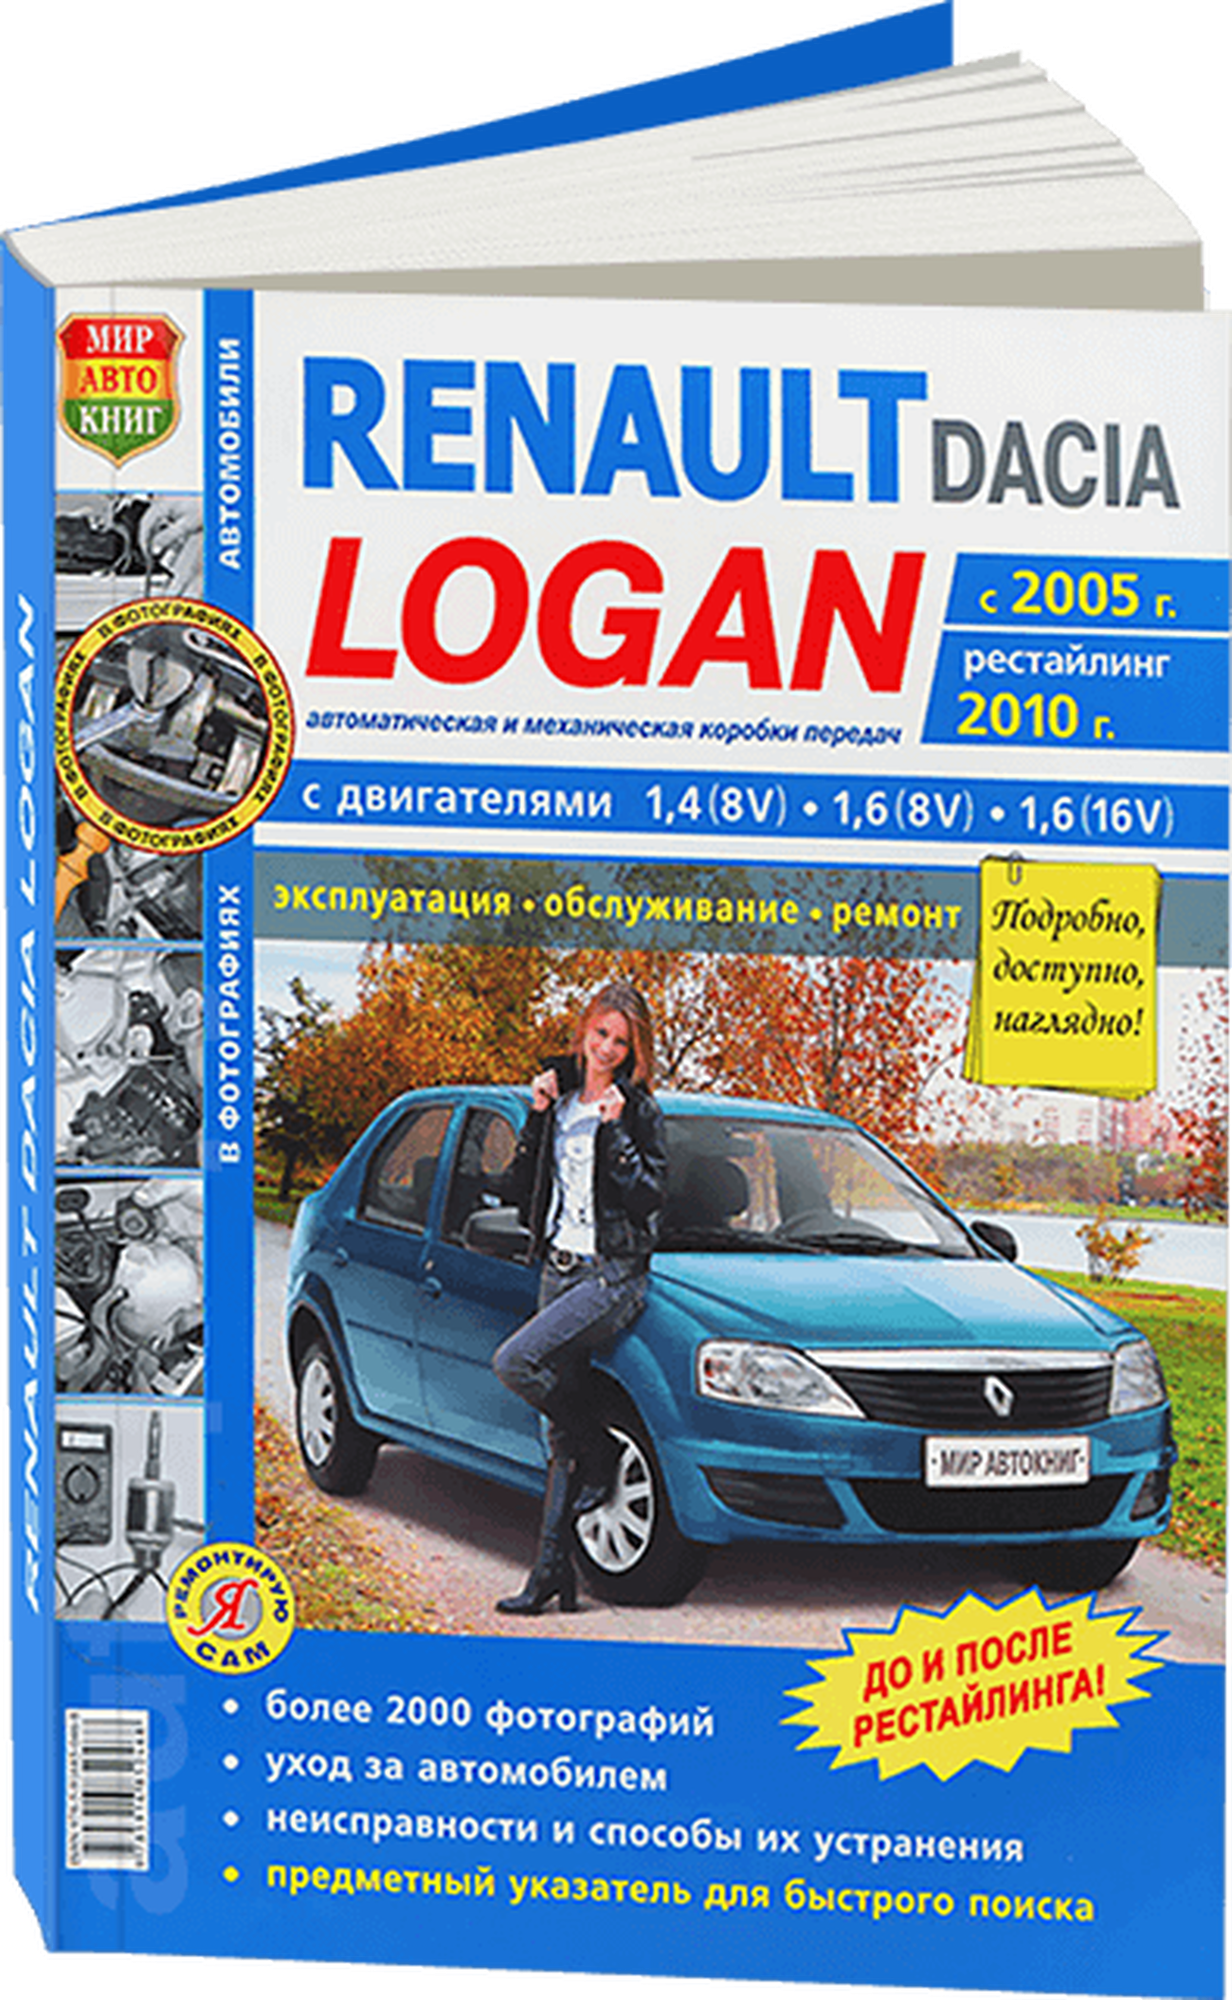 Автокнига: руководство / инструкция по ремонту и эксплутации RENAULT LOGAN (рено логан) бензин с 2005 года выпуска + рестайлинг 2010 года в фотографиях, 978-5-91685-046-8, издательство Мир Автокниг